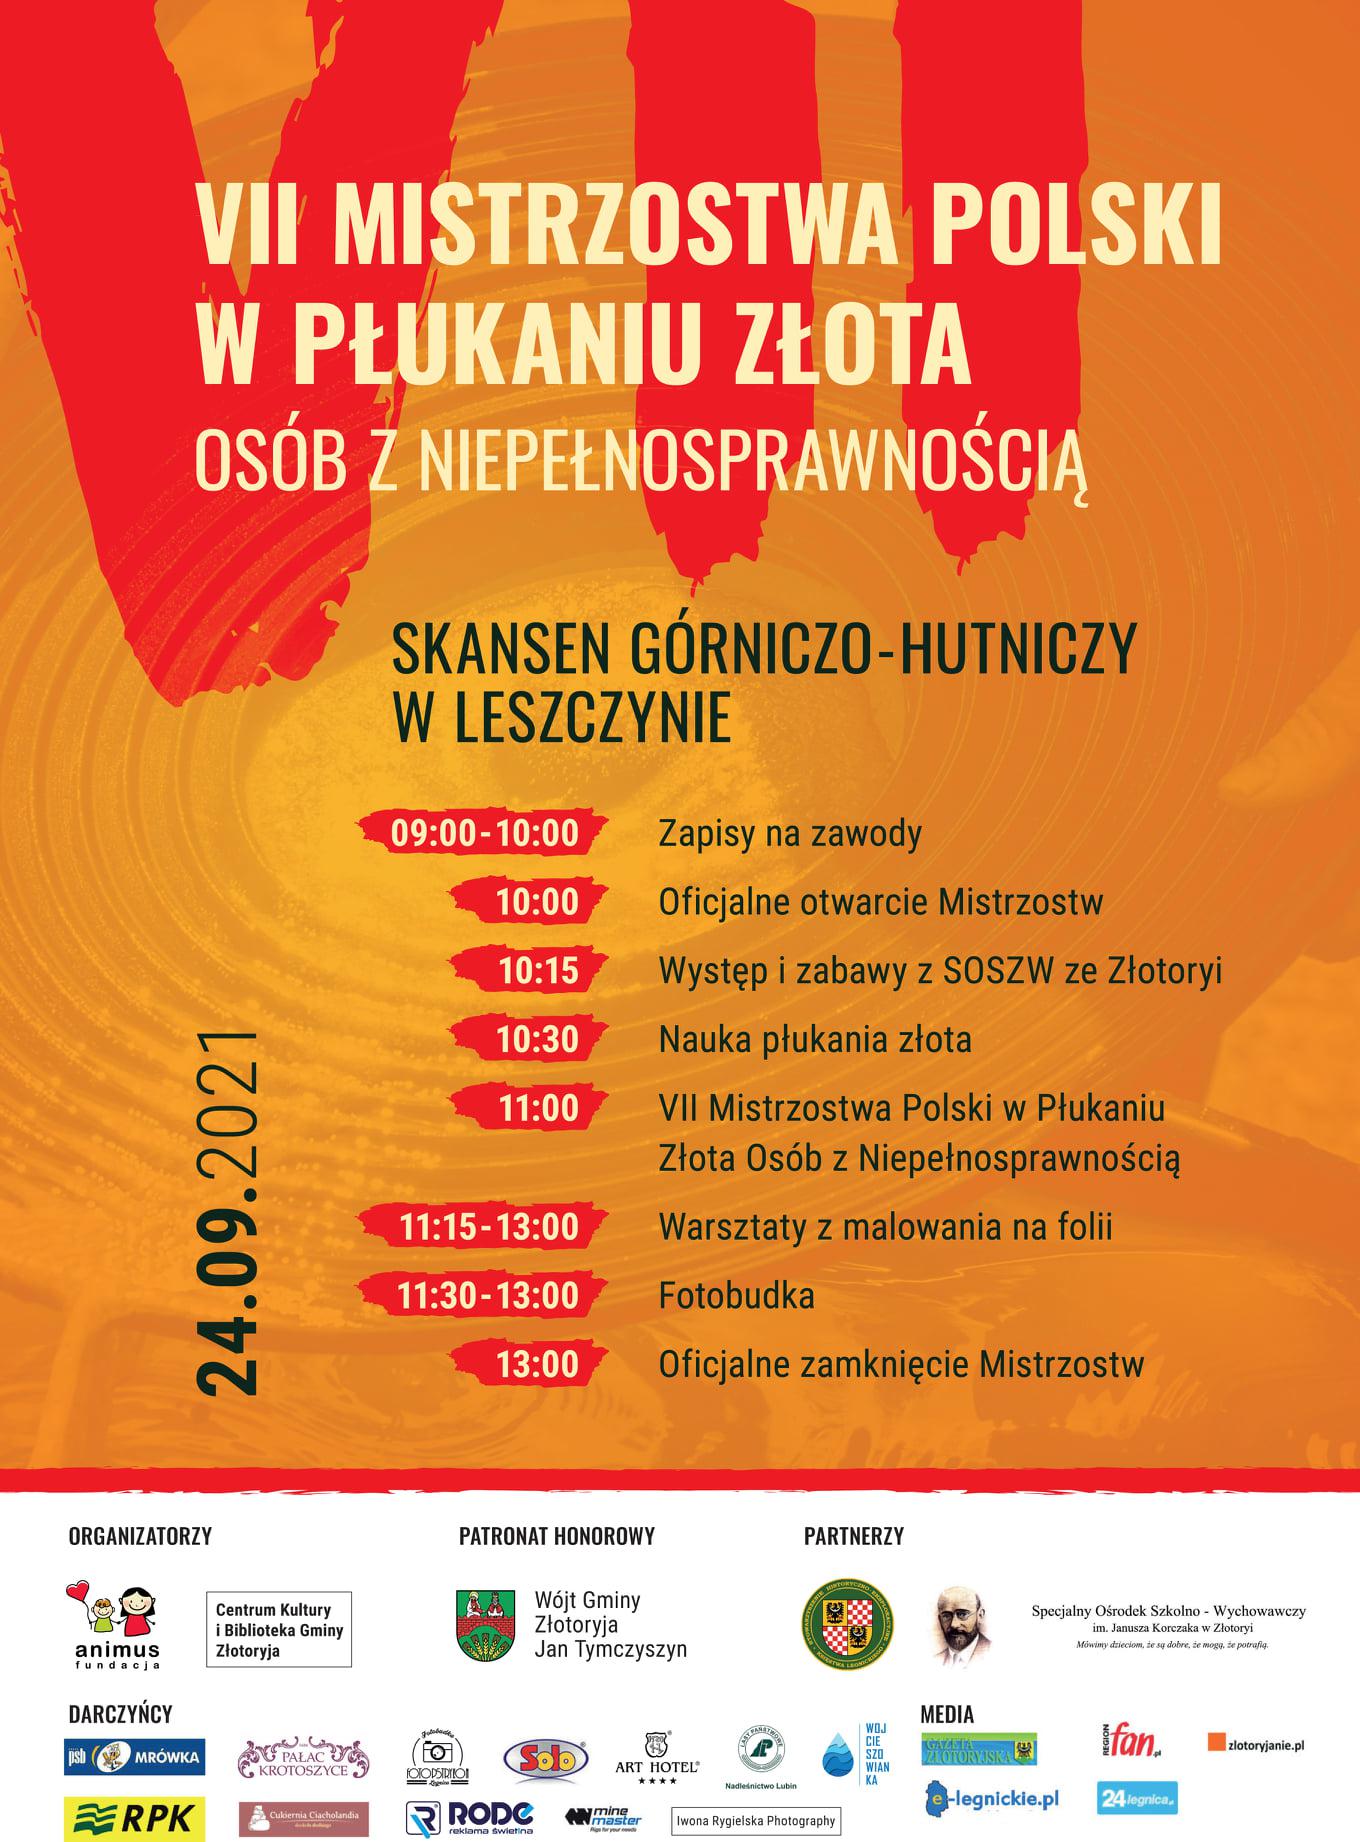 VII Mistrzostwa Polski w Płukaniu Złota Osób z Niepełnosprawnością